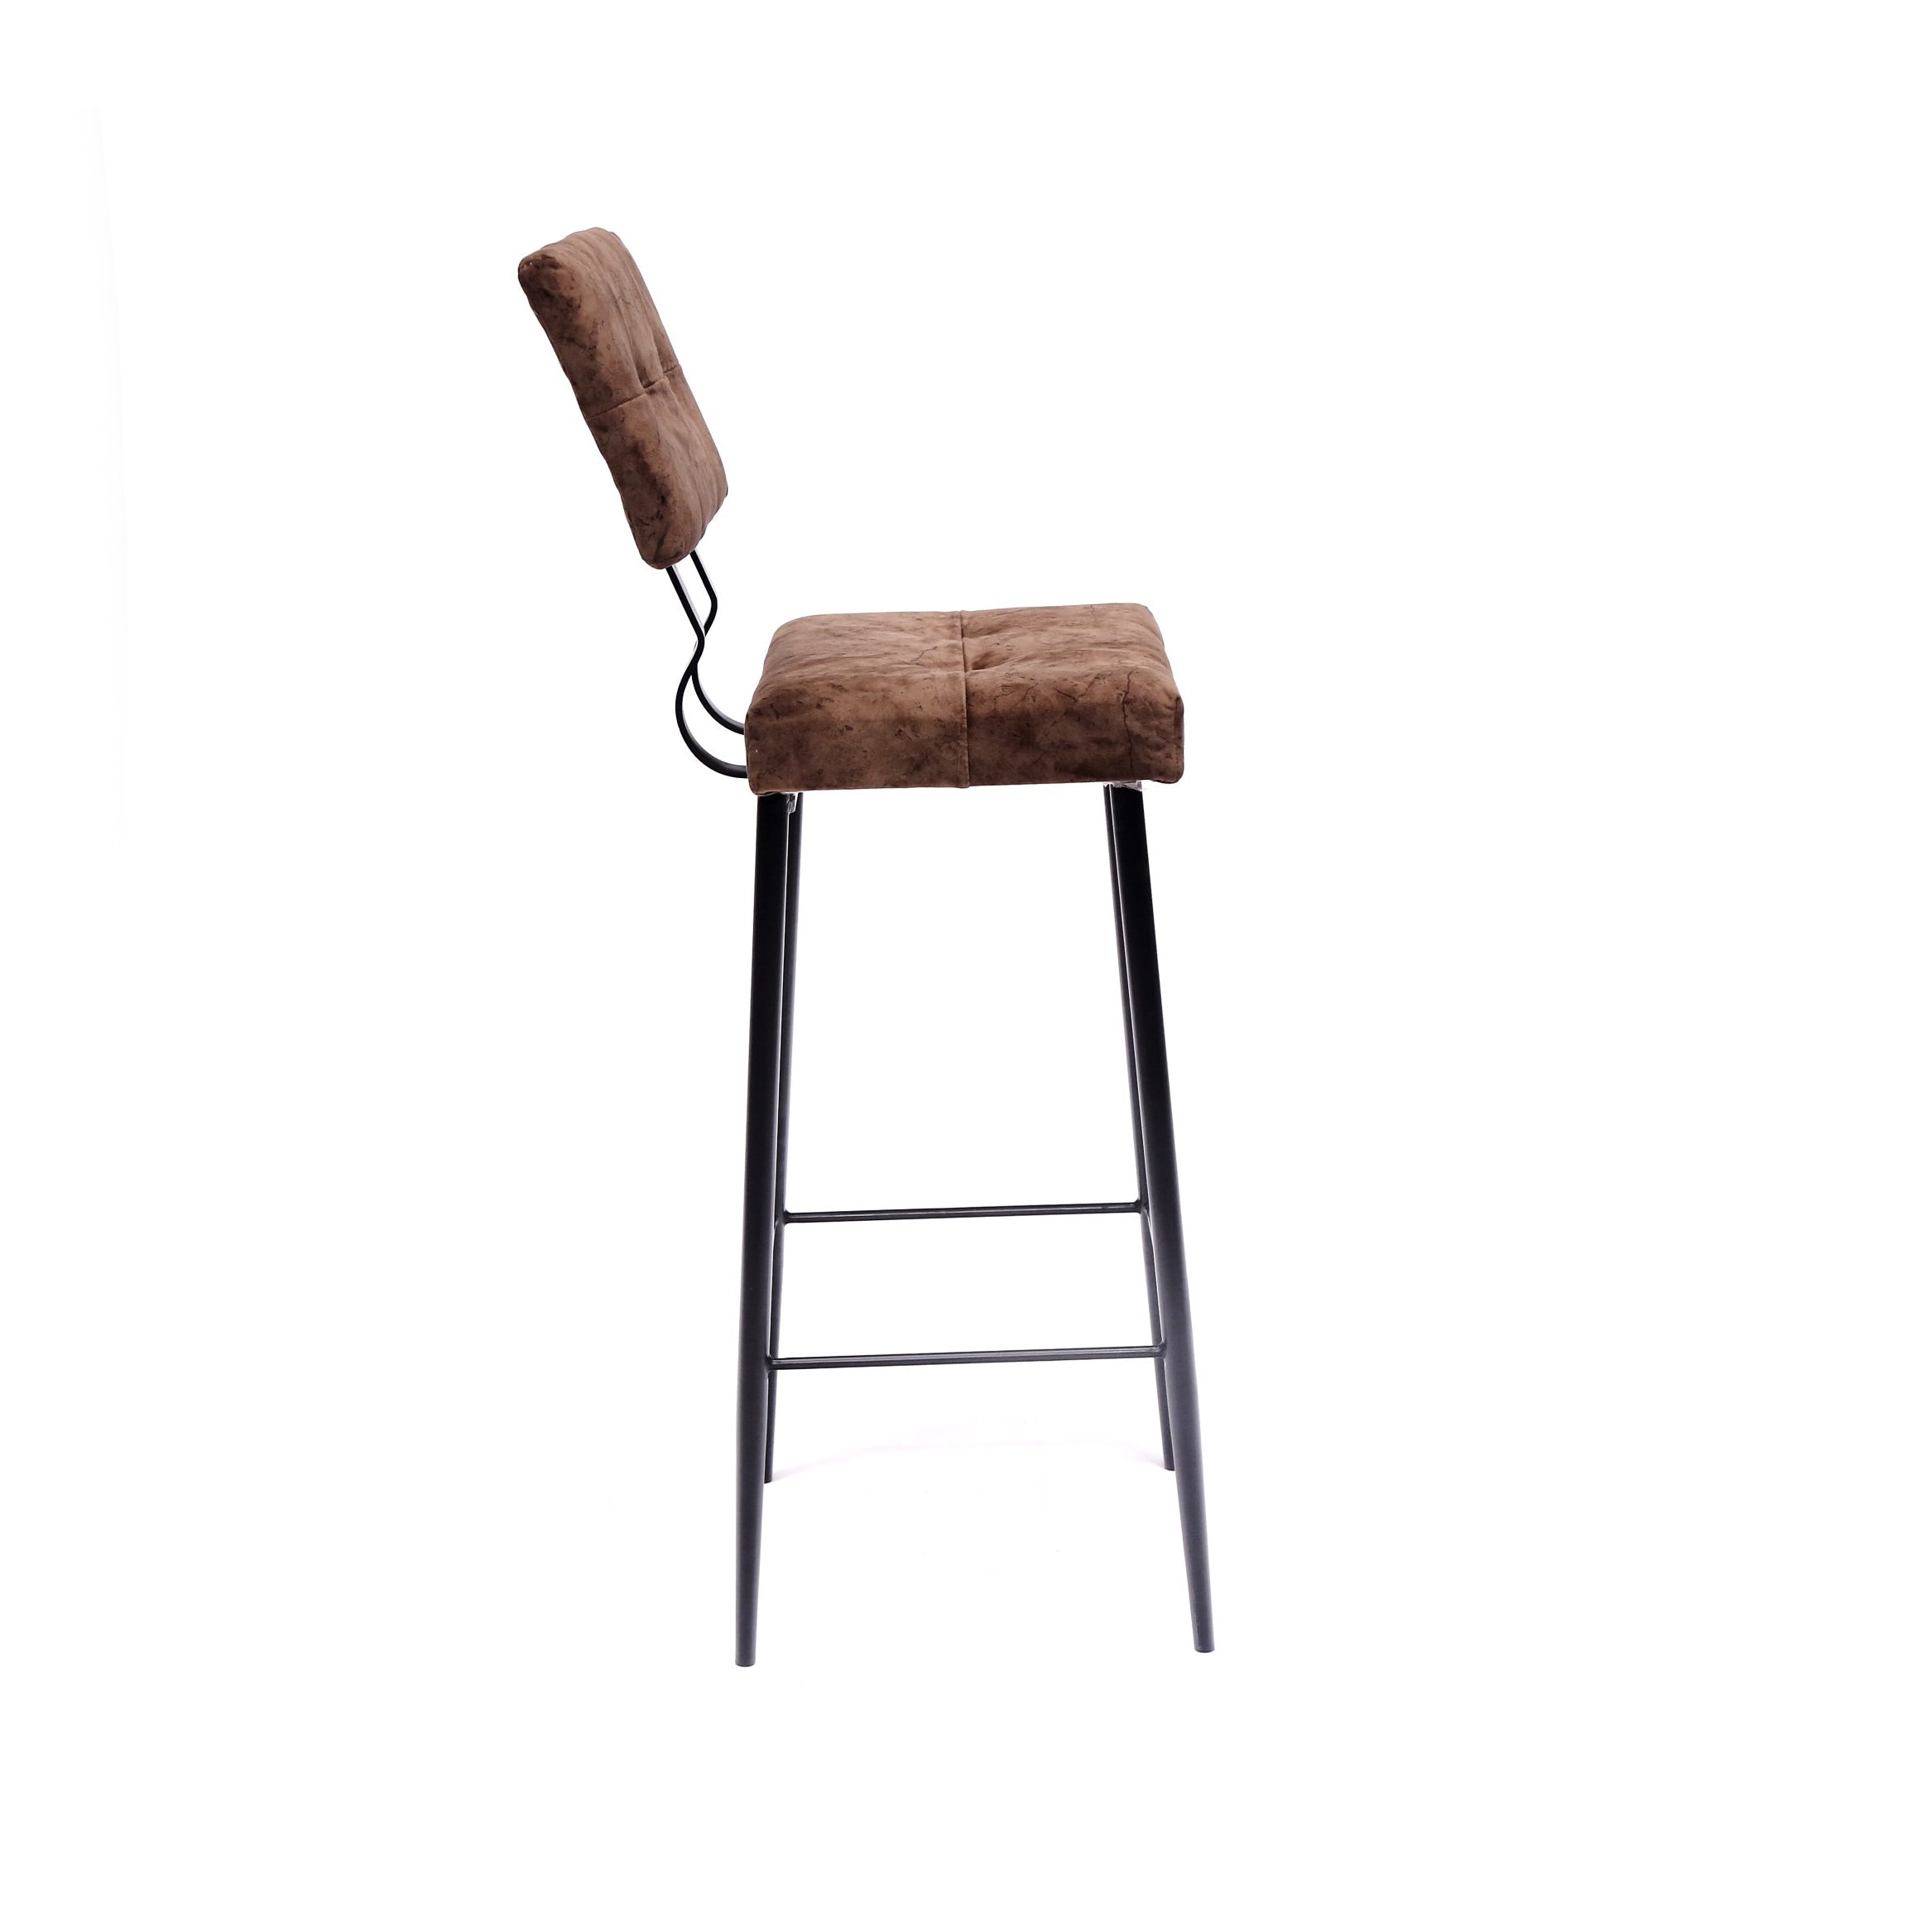 Abstract Back Bar Chair (Plain Brown) Bar Chair